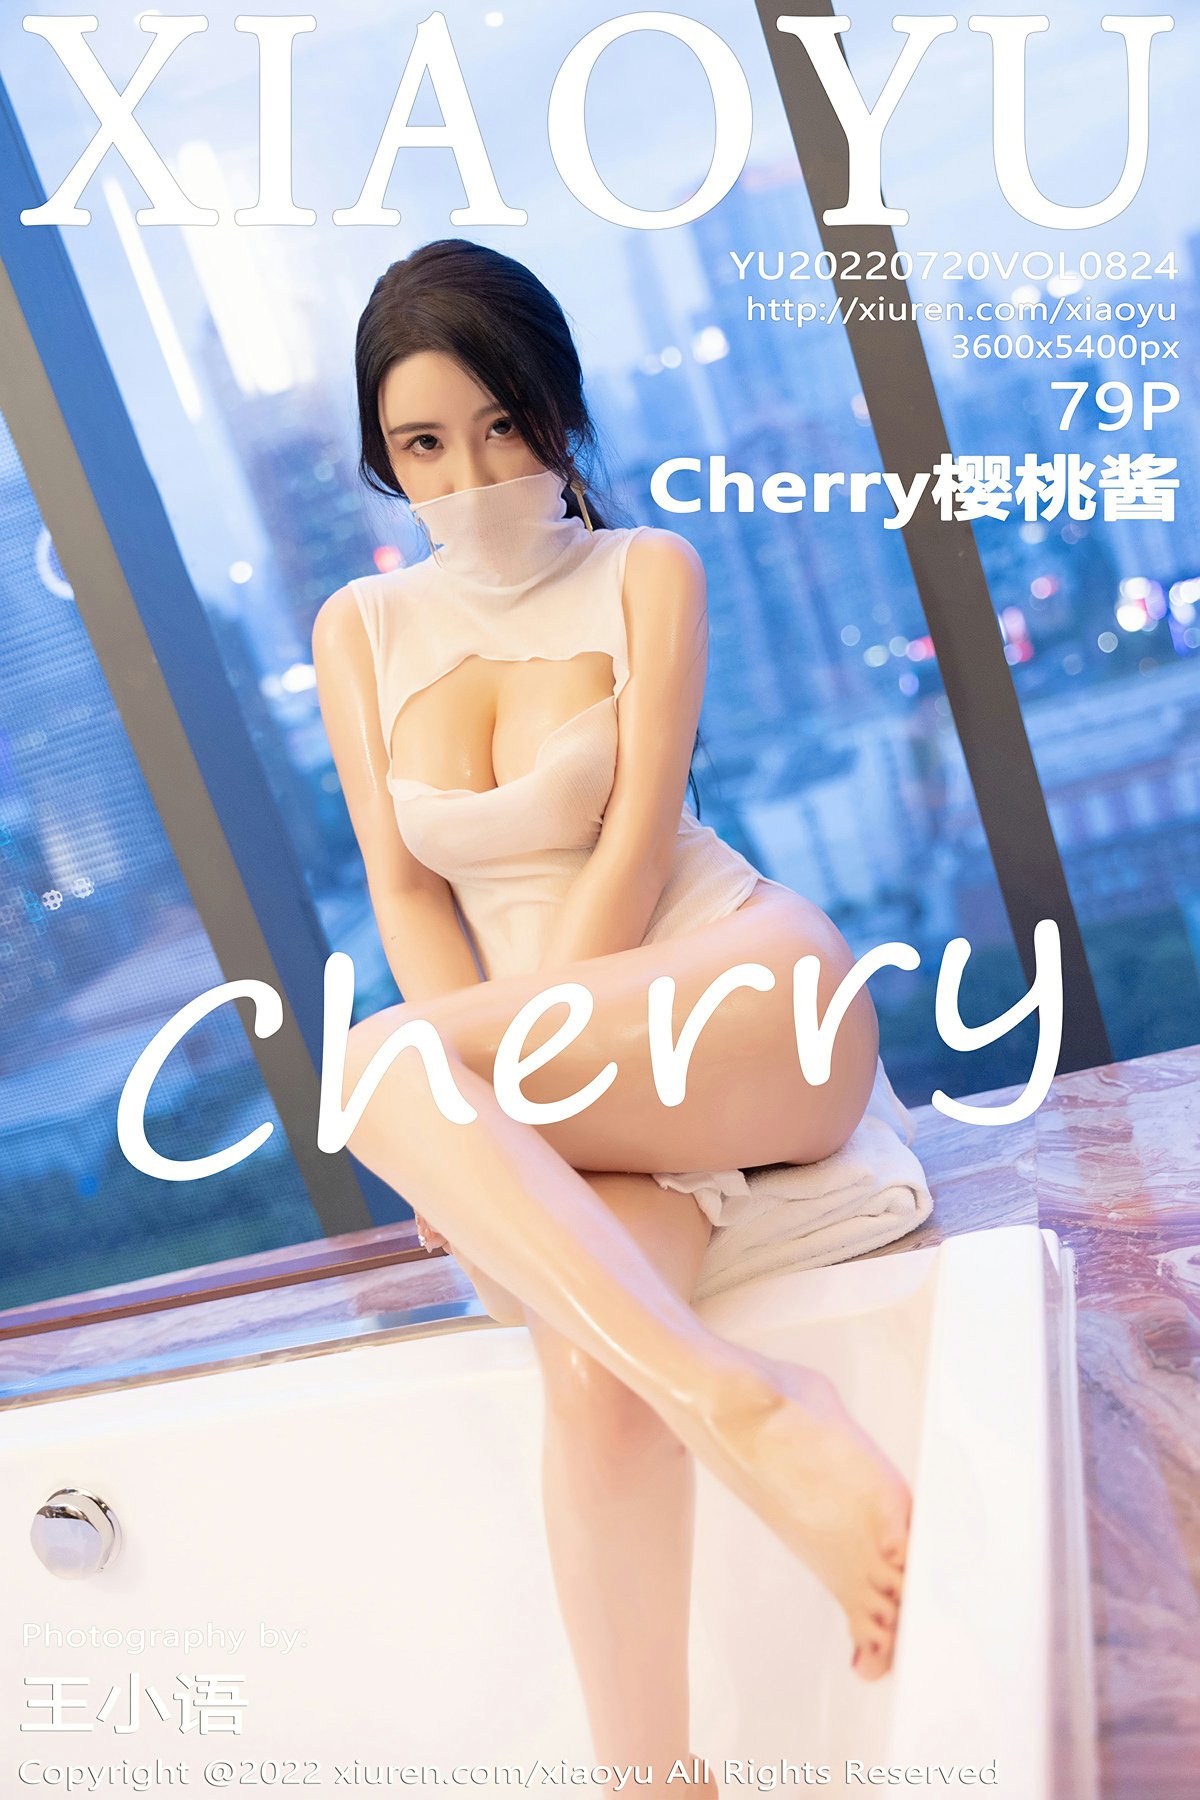 [XIAOYU语画界] 2022.07.20 VOL.824 Cherry樱桃酱 第1张